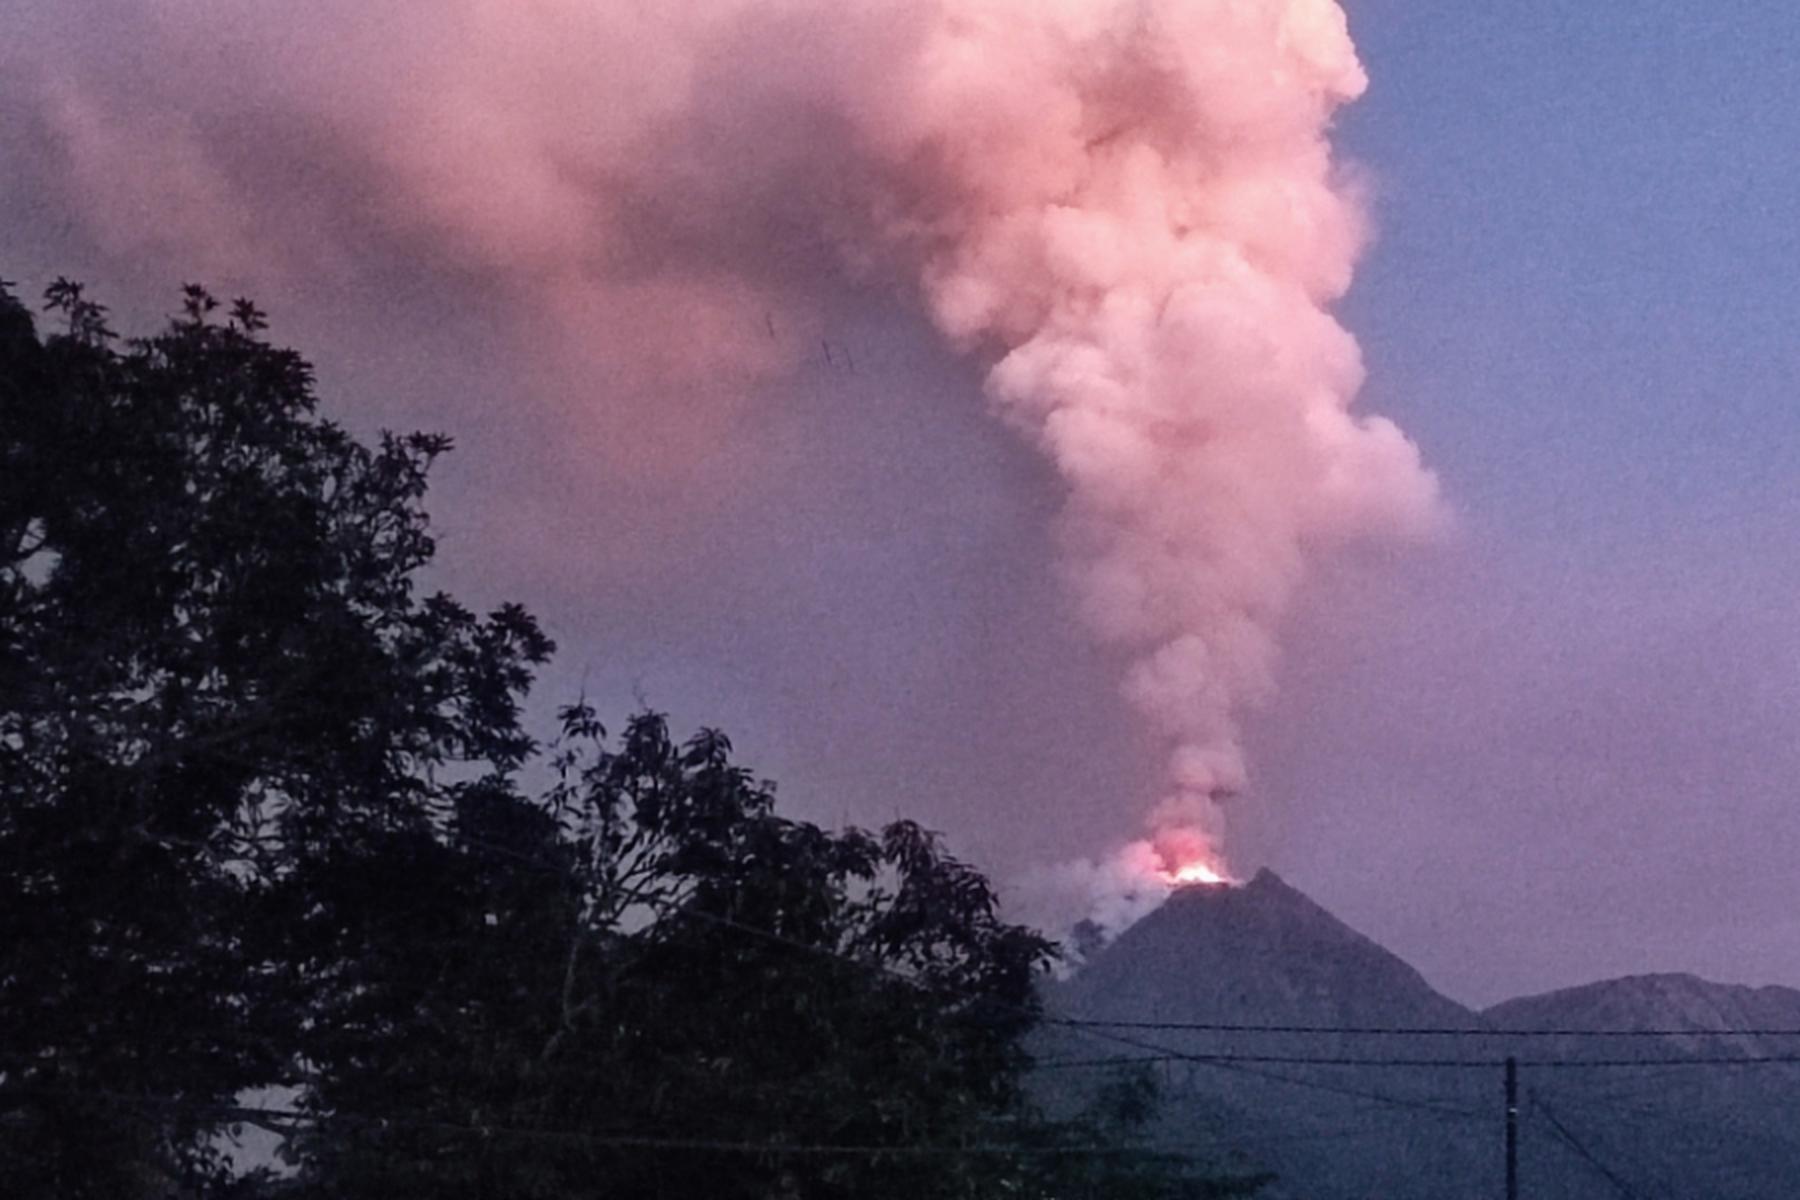 Jakarta: Vulkan Lewotobi Laki-Laki brach gleich zweimal aus